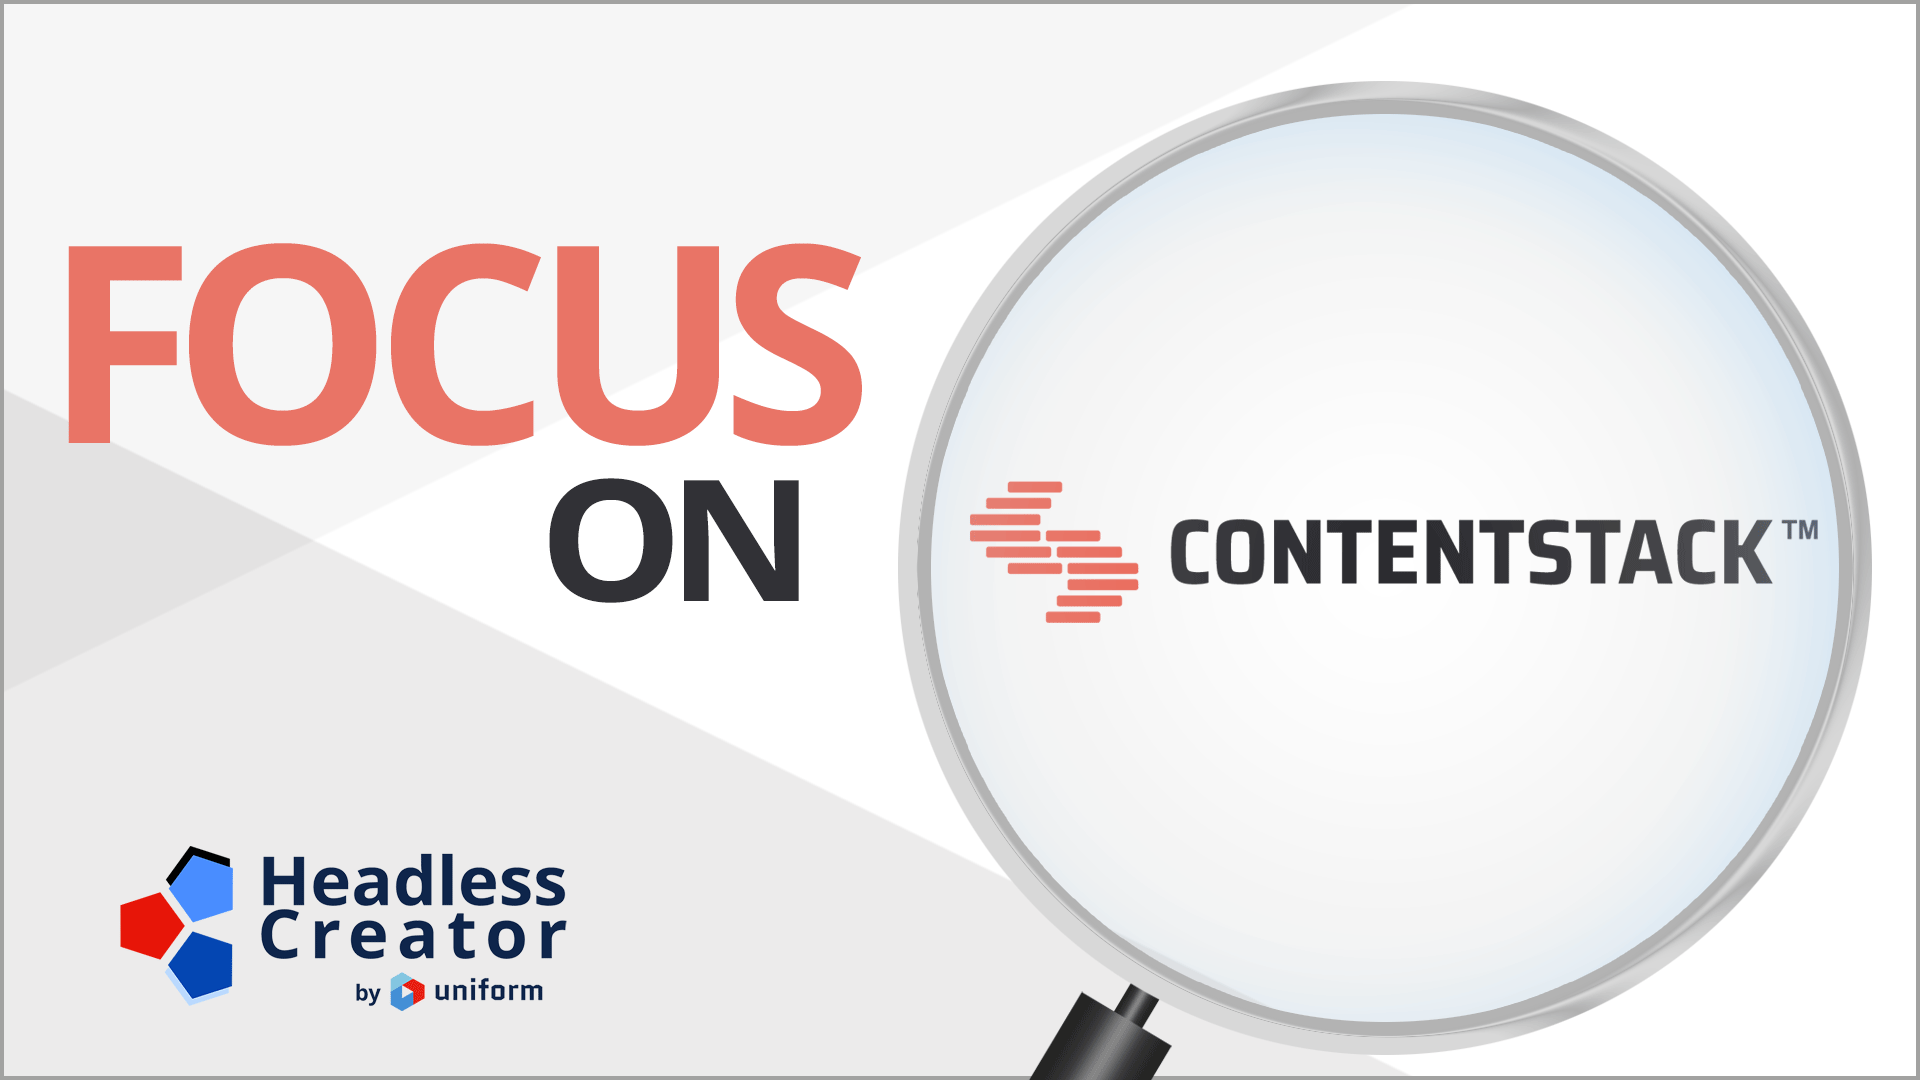 Focus On Contentstack